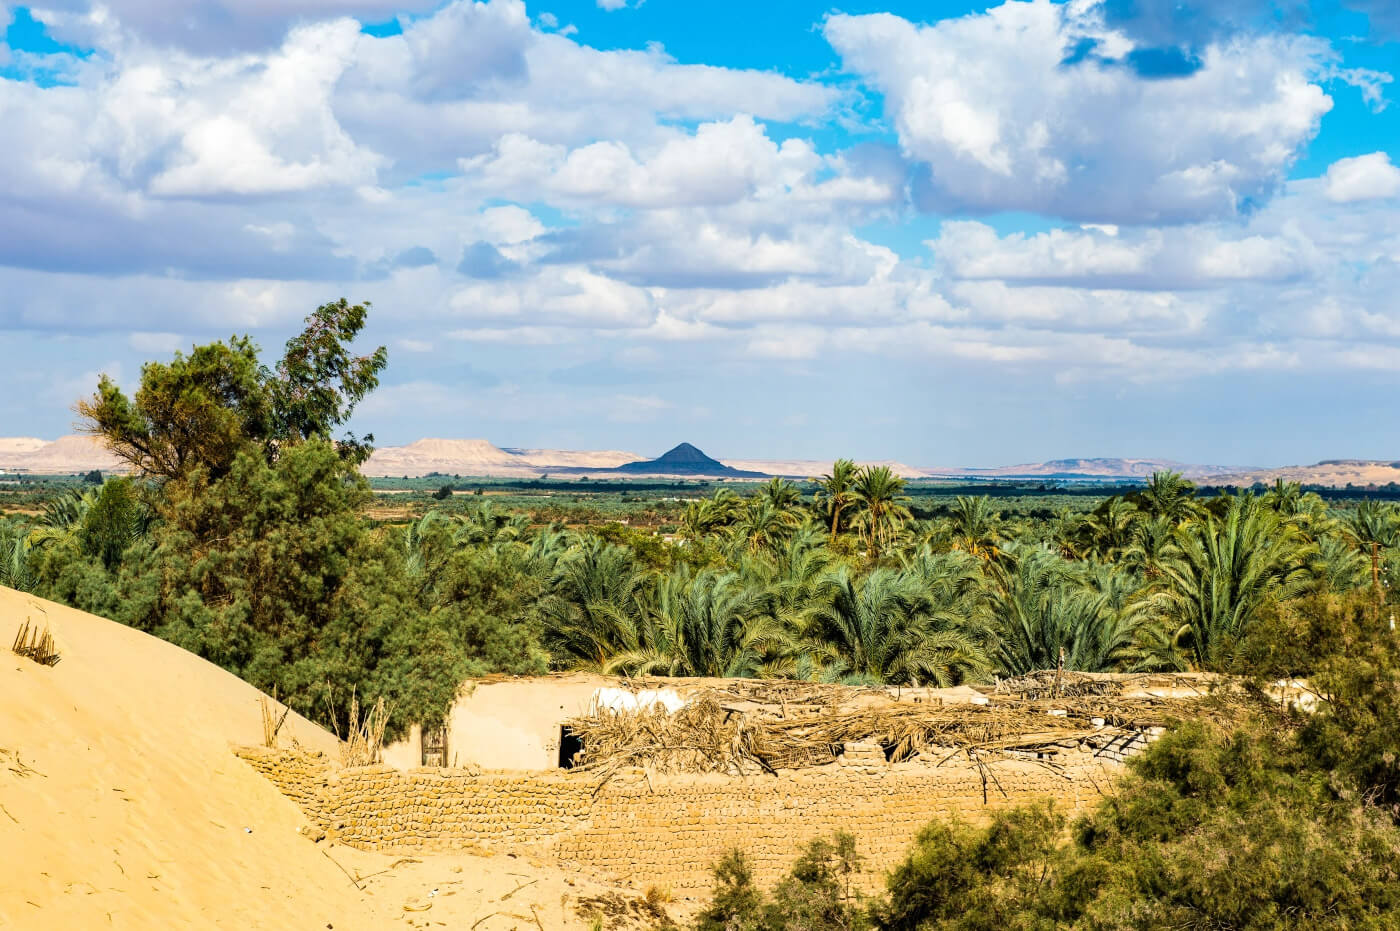 Bahariya Oasis - An Ideal Destination For Your Egypt Trip